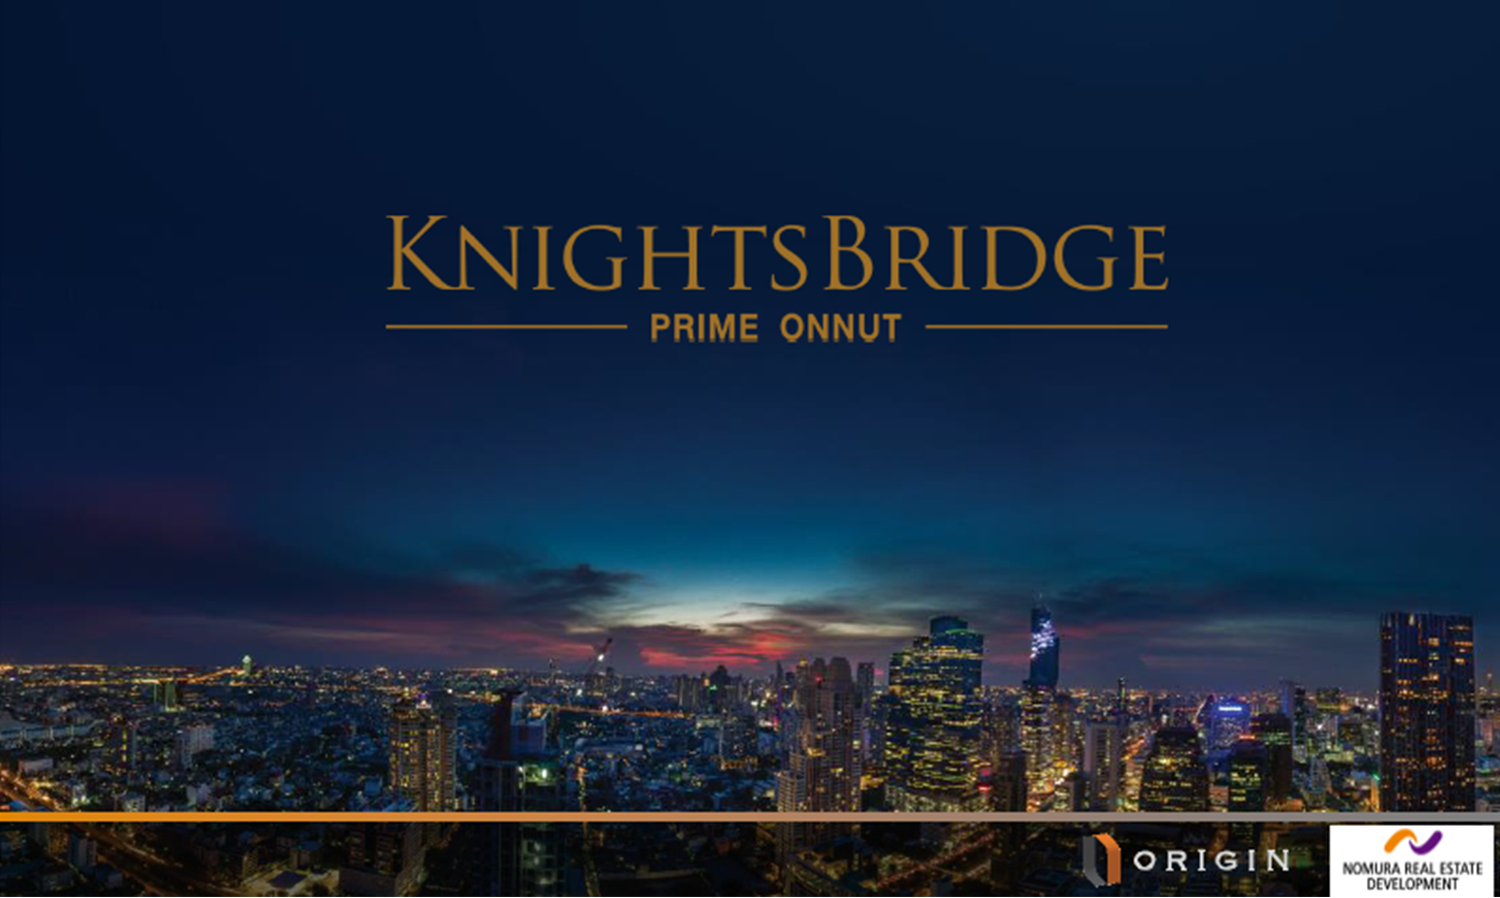 Knightsbridge Prime Onnut